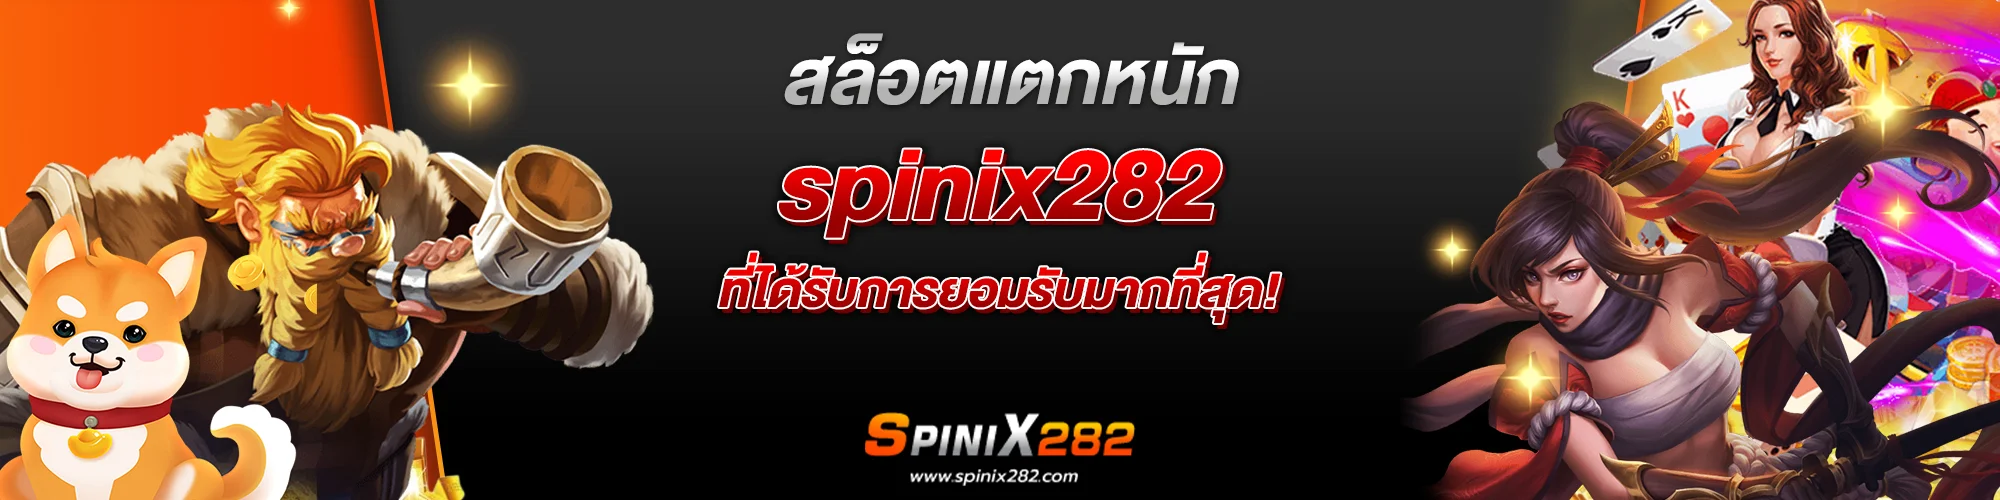 สล็อตแตกหนัก spinix282 ที่ได้รับการยอมรับมากที่สุด!​